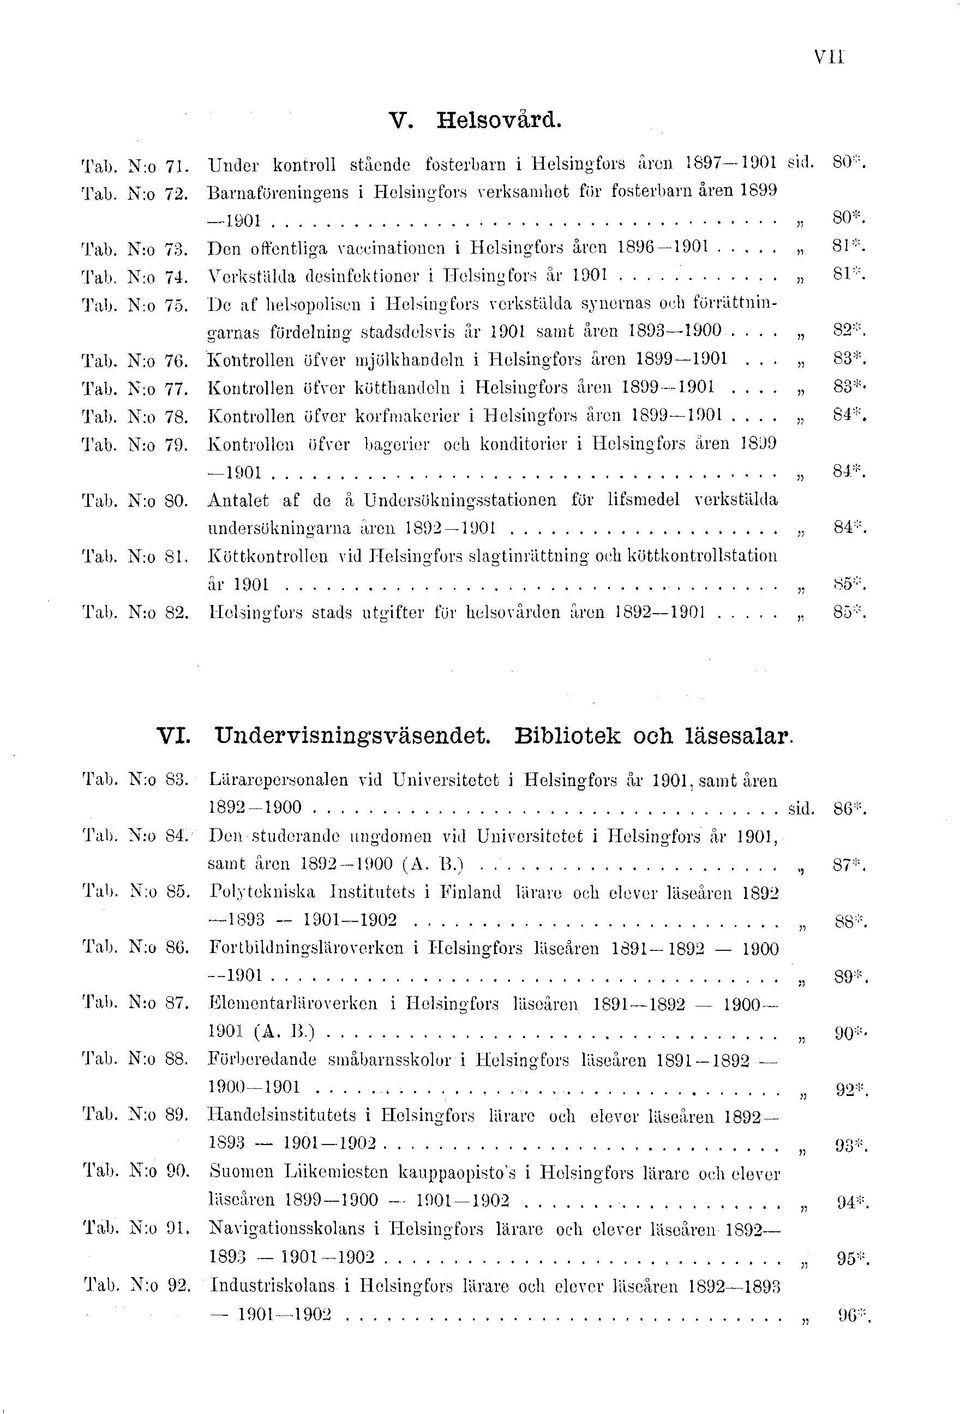 De af helsopolisen i Helsingfors verkstlilda synernas och förrättningarnas fördelning stadsdelsvis år 1901 samt åren 1893 1900.... 82* Tab. N:o 76.